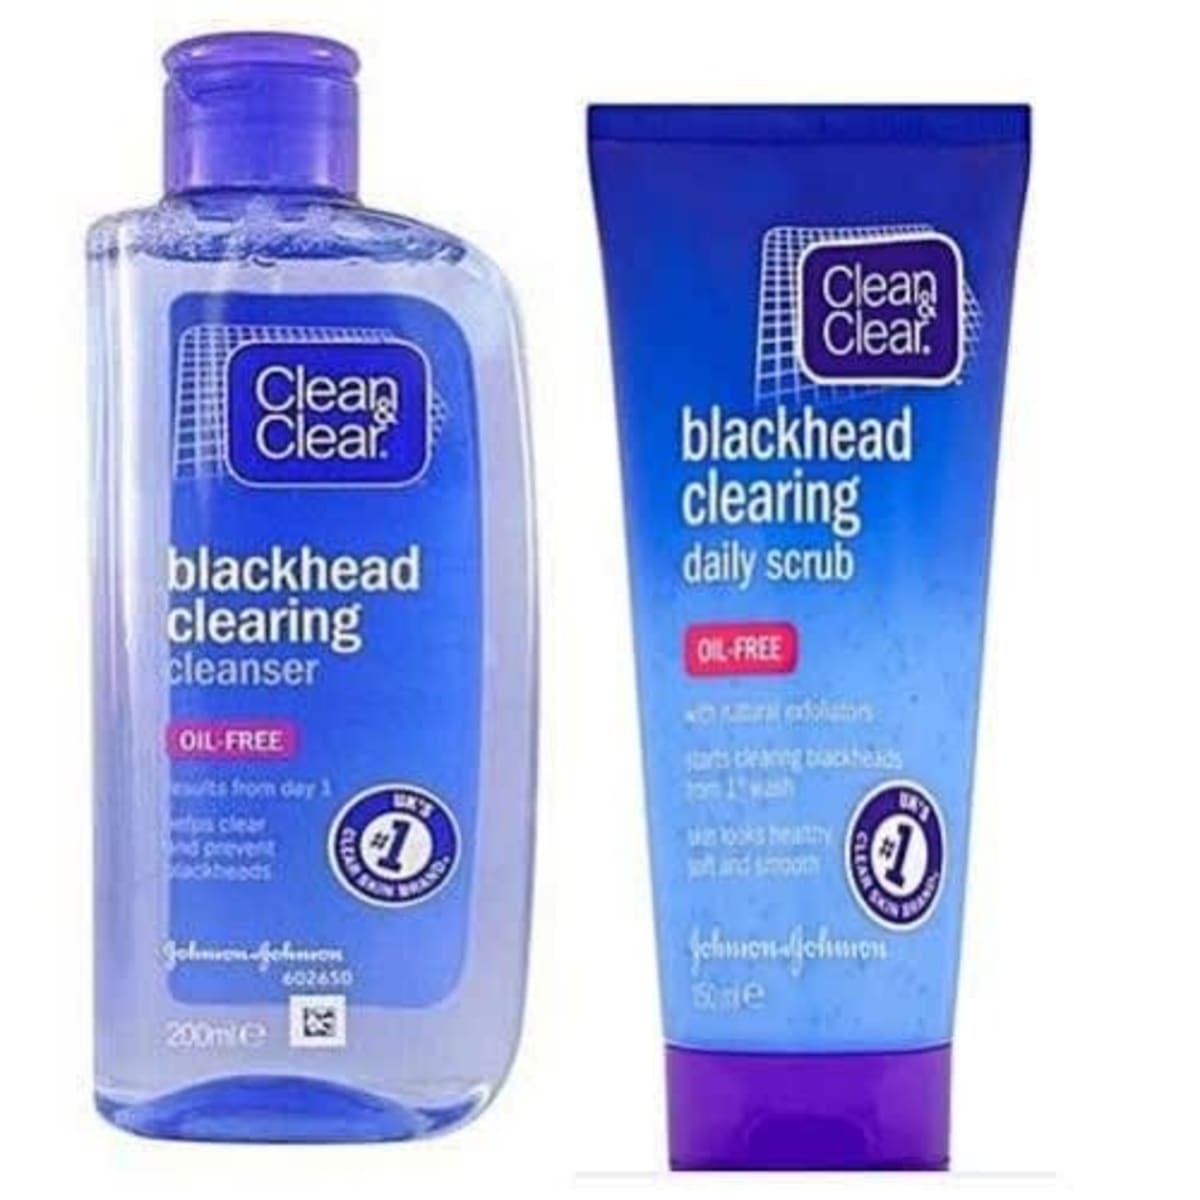 Clean & Clear BlackHead Cleanser 200ML - Pharmacy Direct Kenya